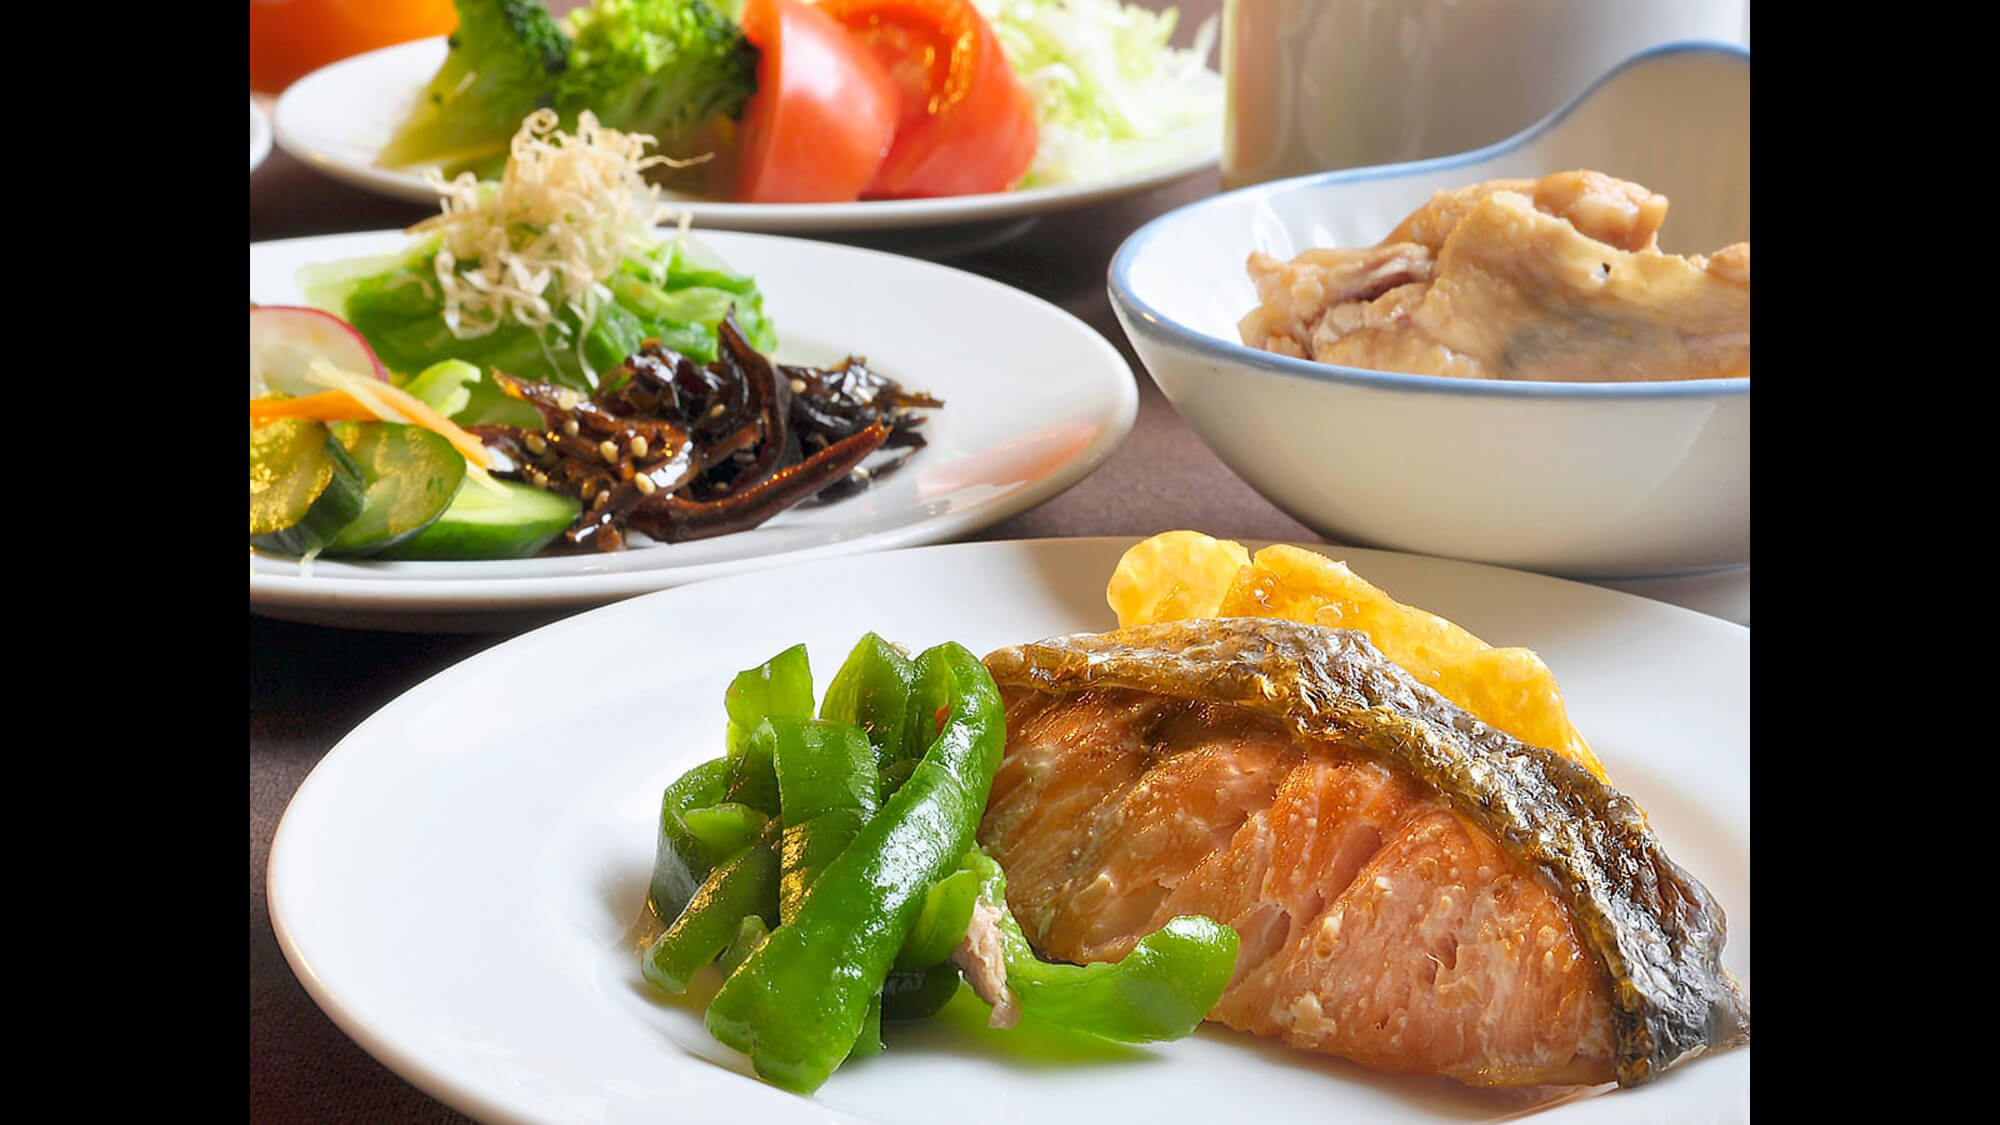 【朝食一例】朝は和食派という方は焼き魚に白飯、お味噌汁を合わせてどうぞ。